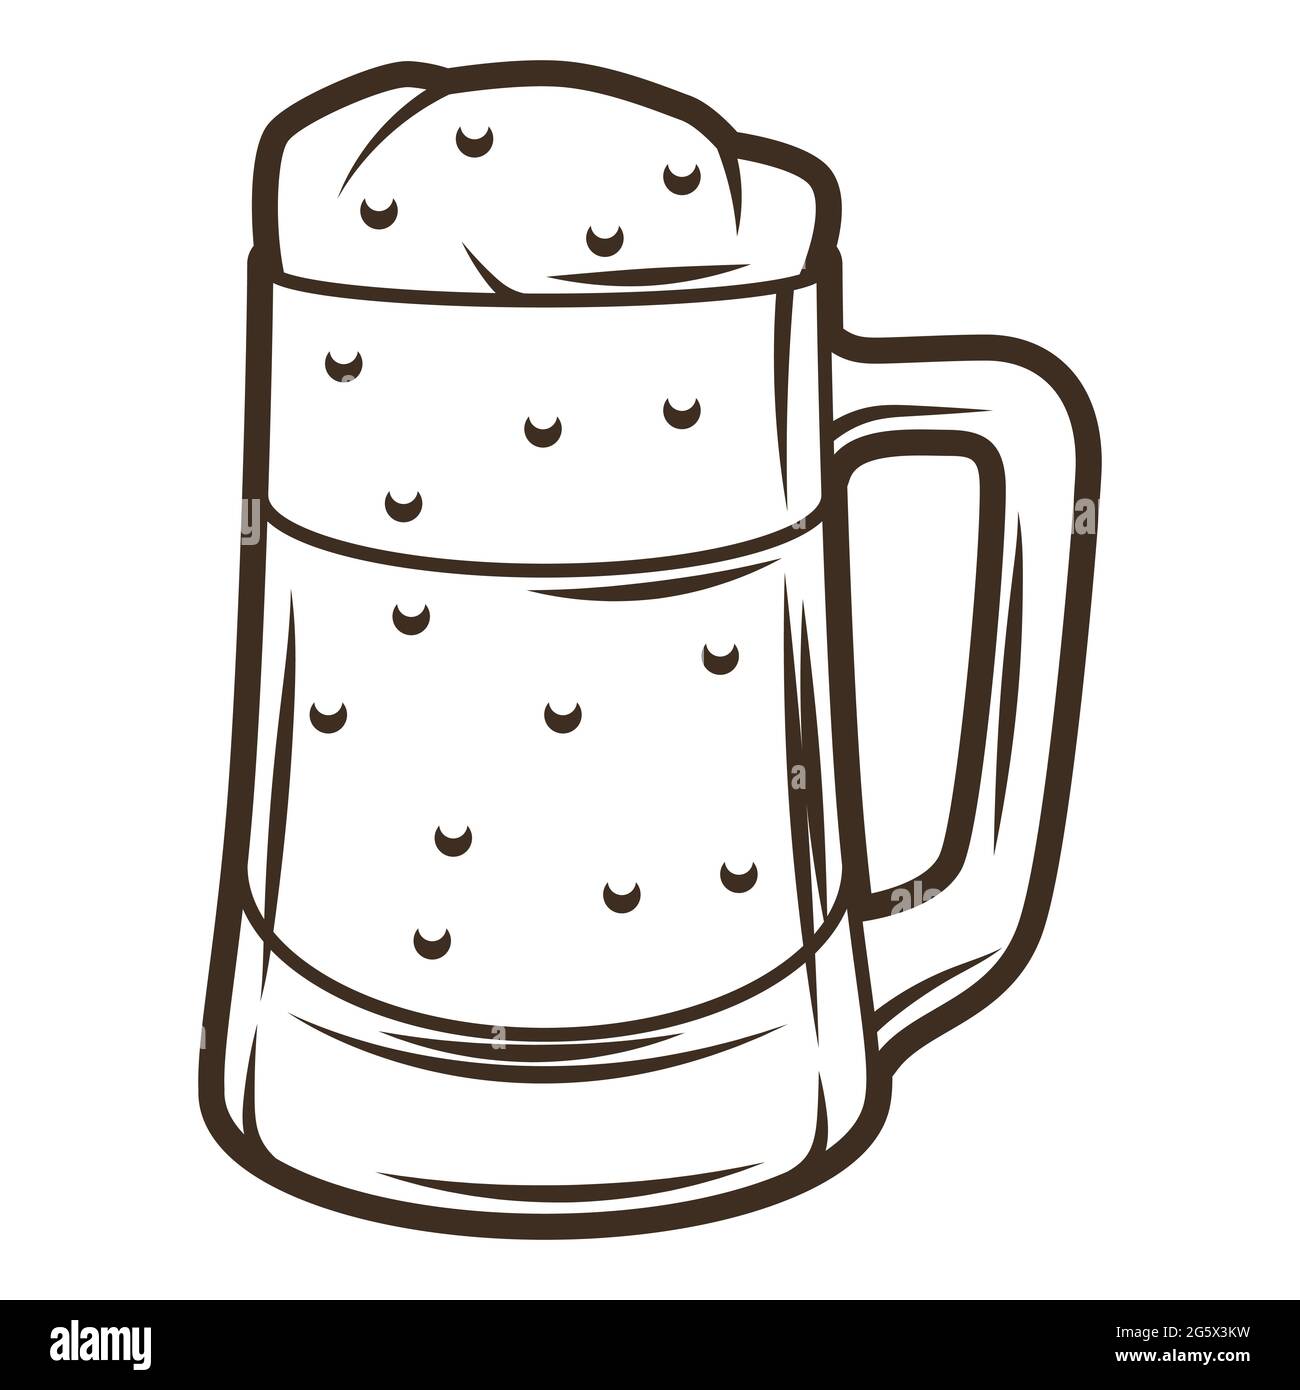 Illustration von Glas-Becher mit Bier. Objekt in Gravur handgezeichneten Stil. Altes Element für Bierfest oder Oktoberfest. Stock Vektor